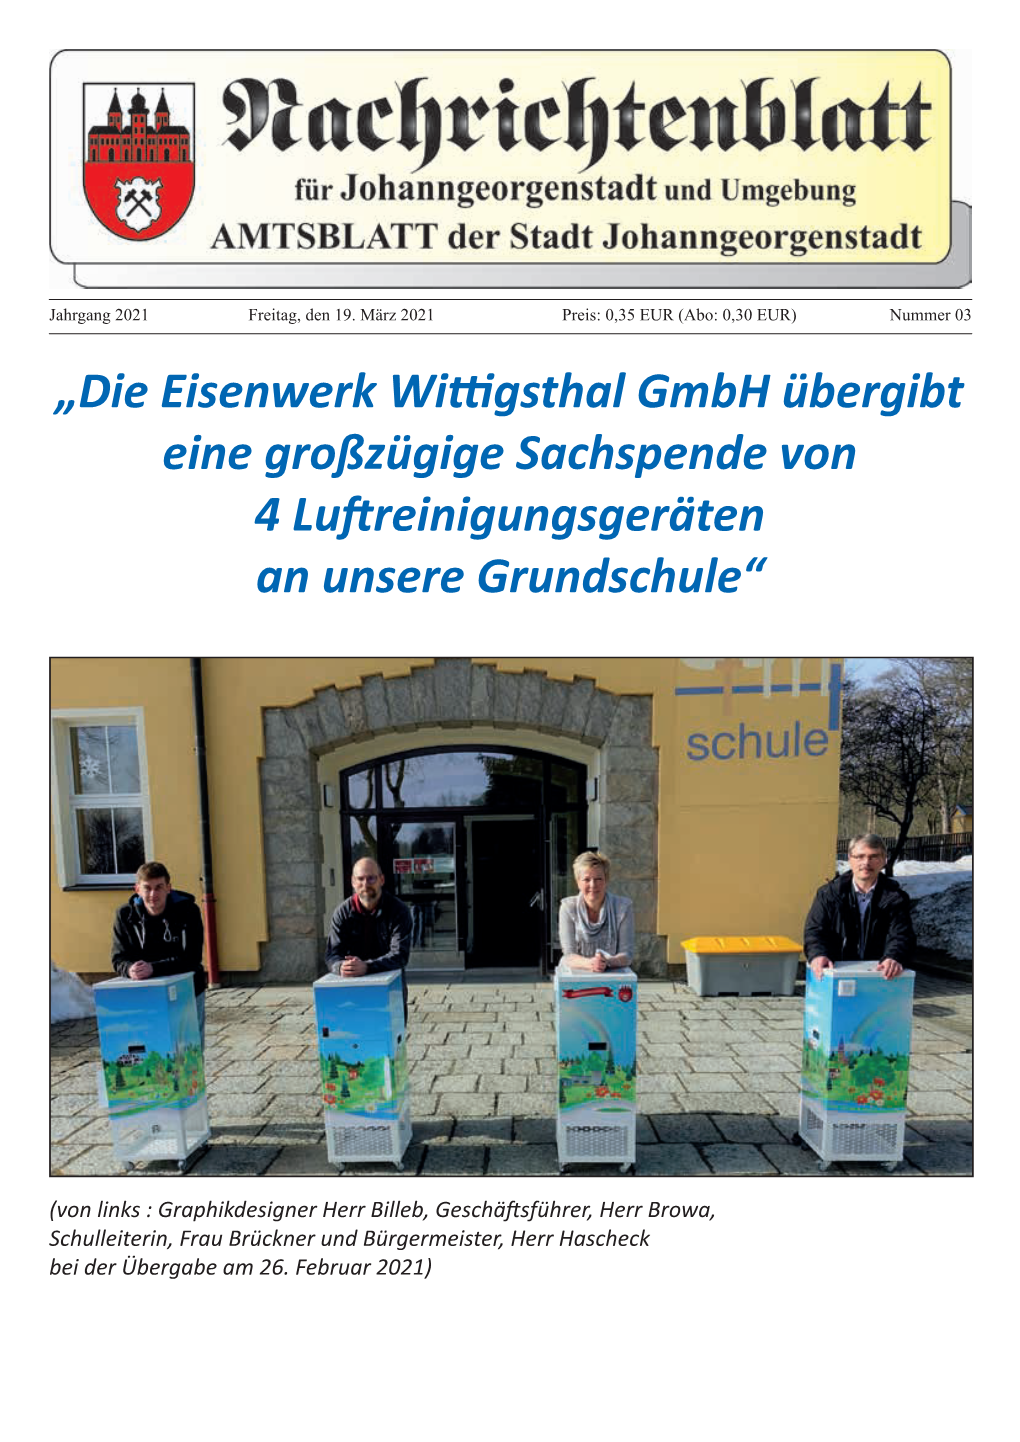 Die Eisenwerk Wittigsthal Gmbh Übergibt Eine Großzügige Sachspende Von 4 Luftreinigungsgeräten an Unsere Grundschule“